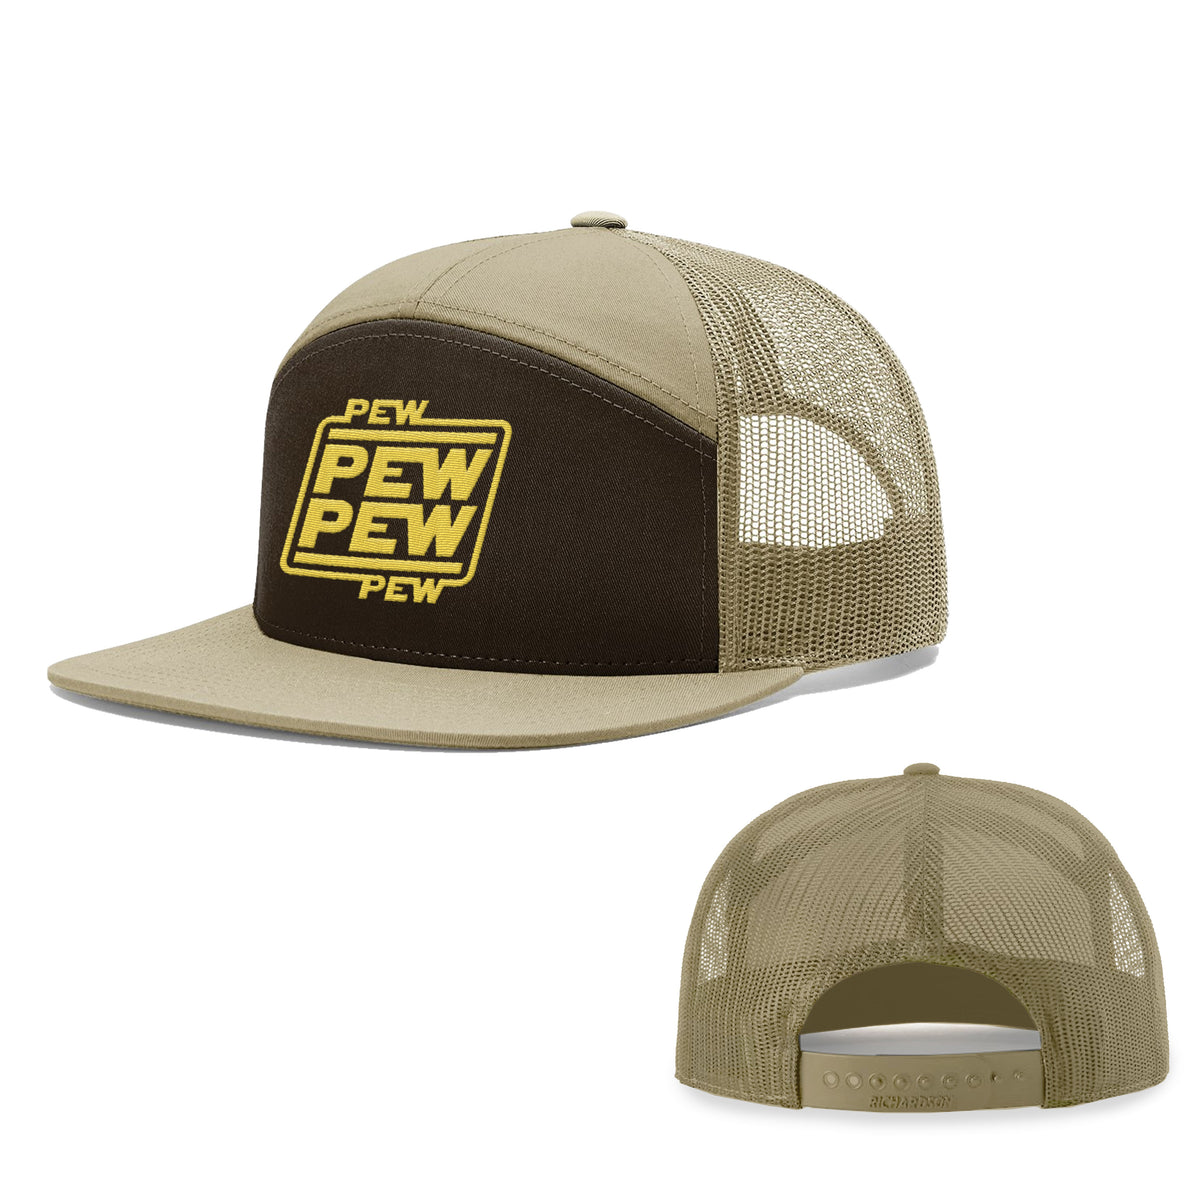 Pew Pew 7 Panel Hats